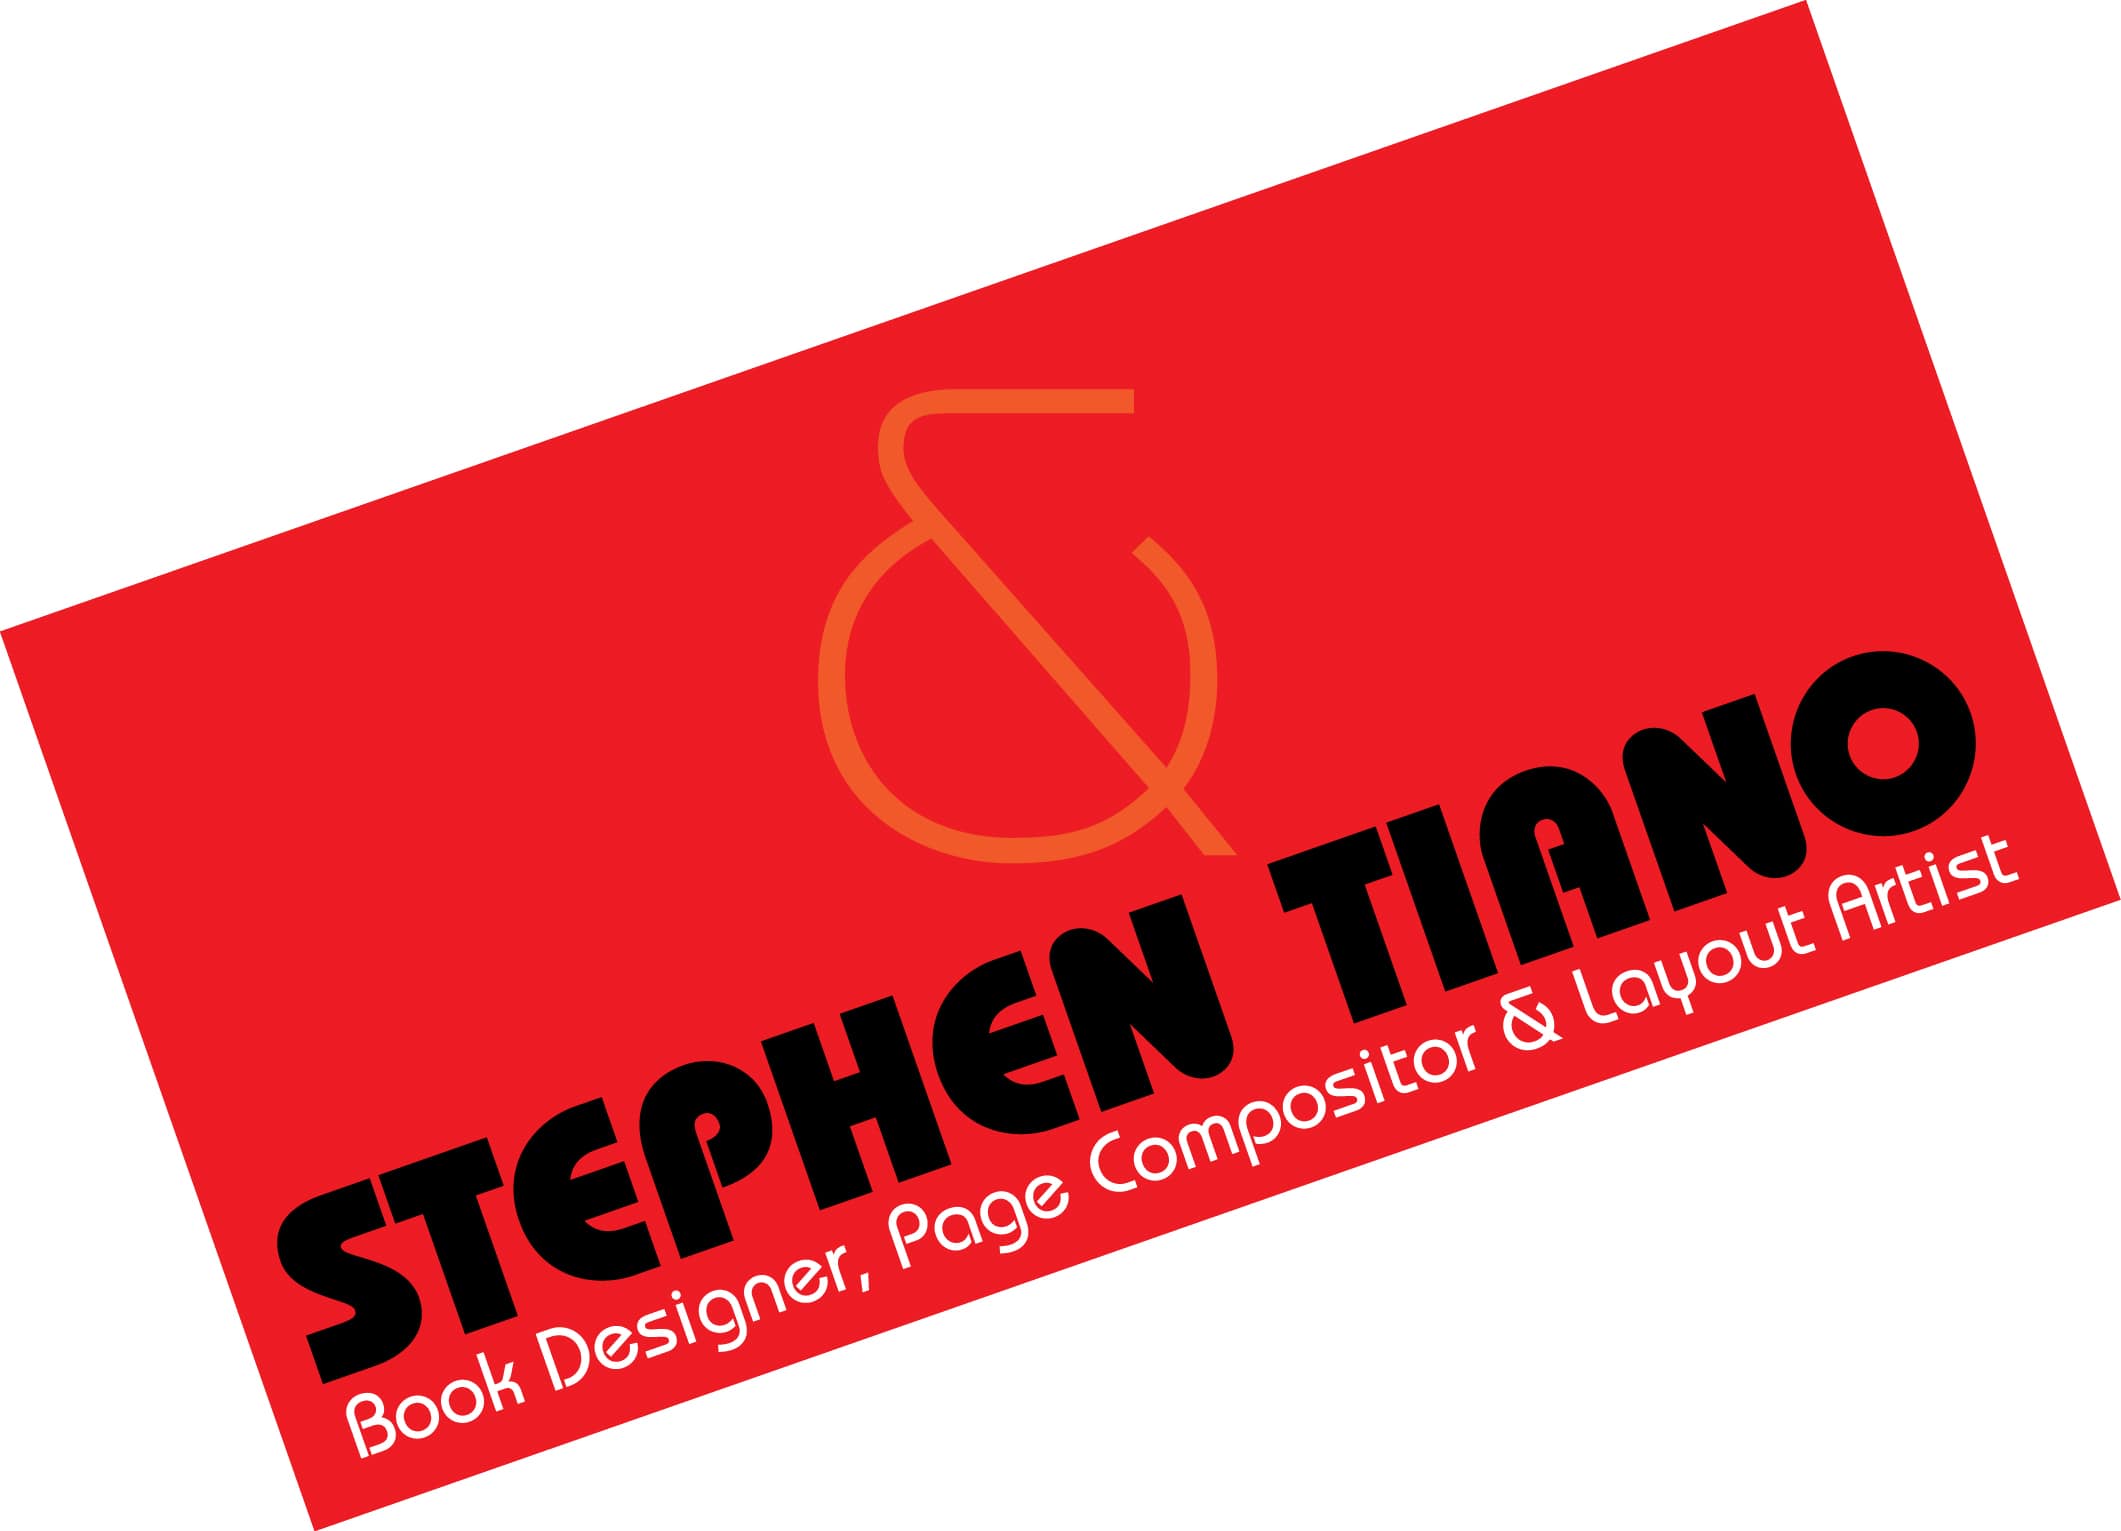 Stephen Tiano